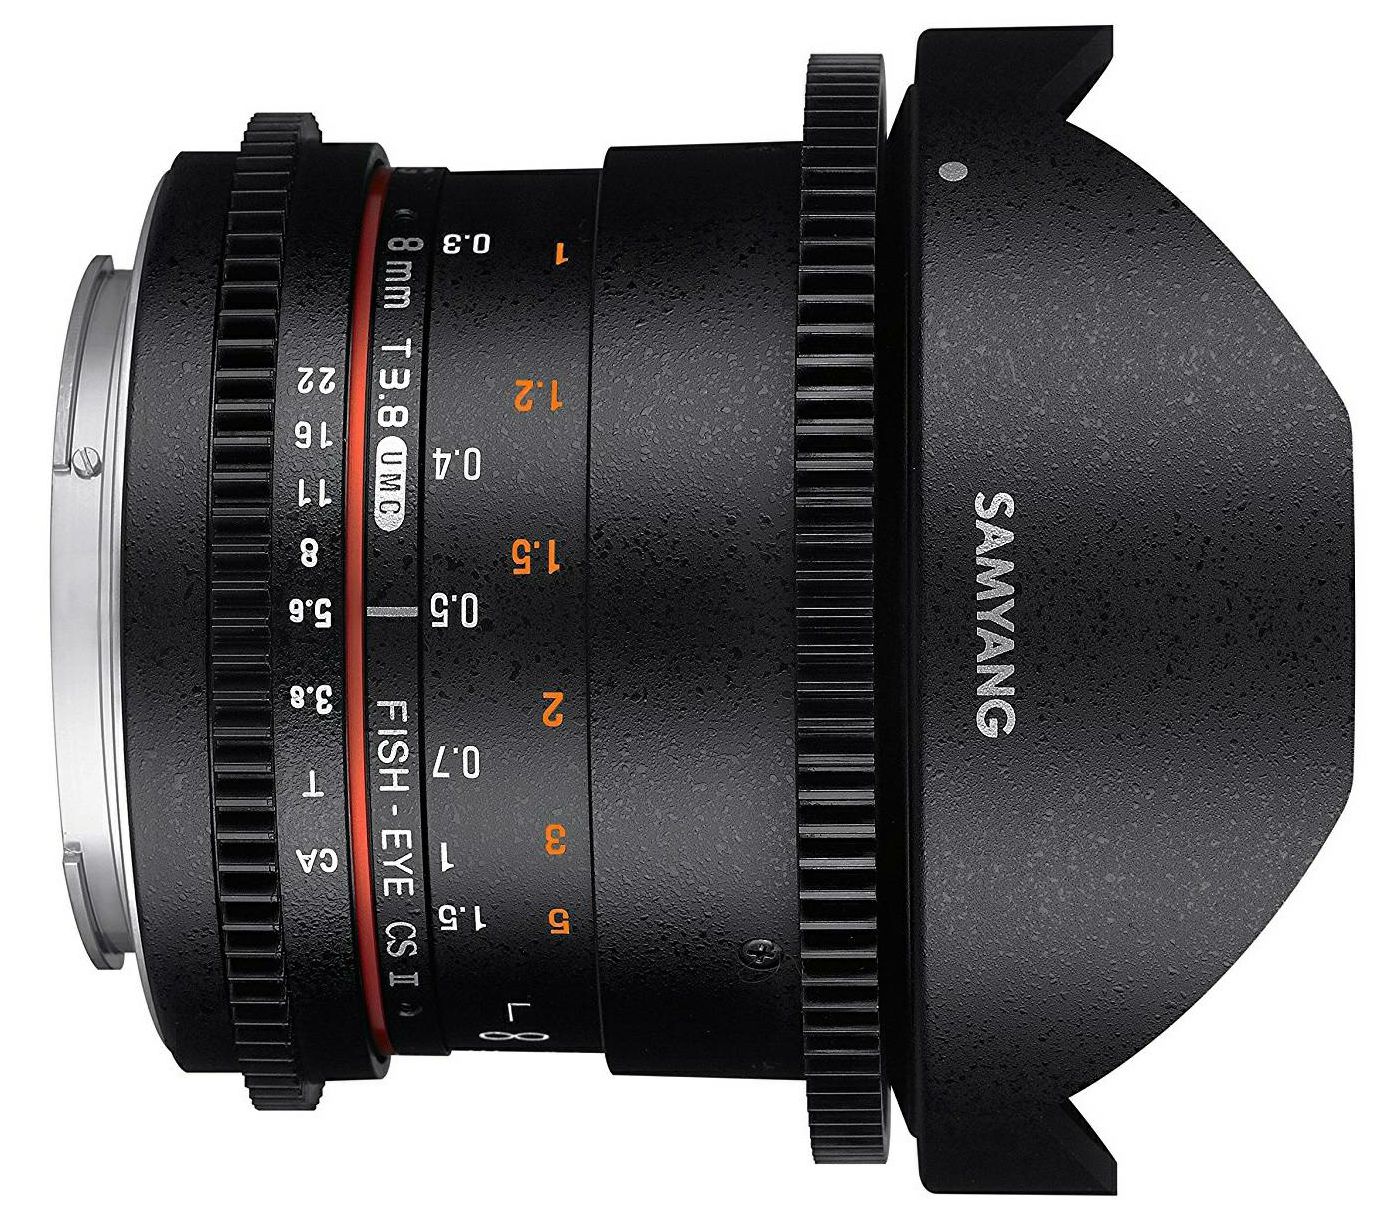 Samyang 8mm T3.8 VDSLR II CSII Fisheye objektiv za Canon EF-M